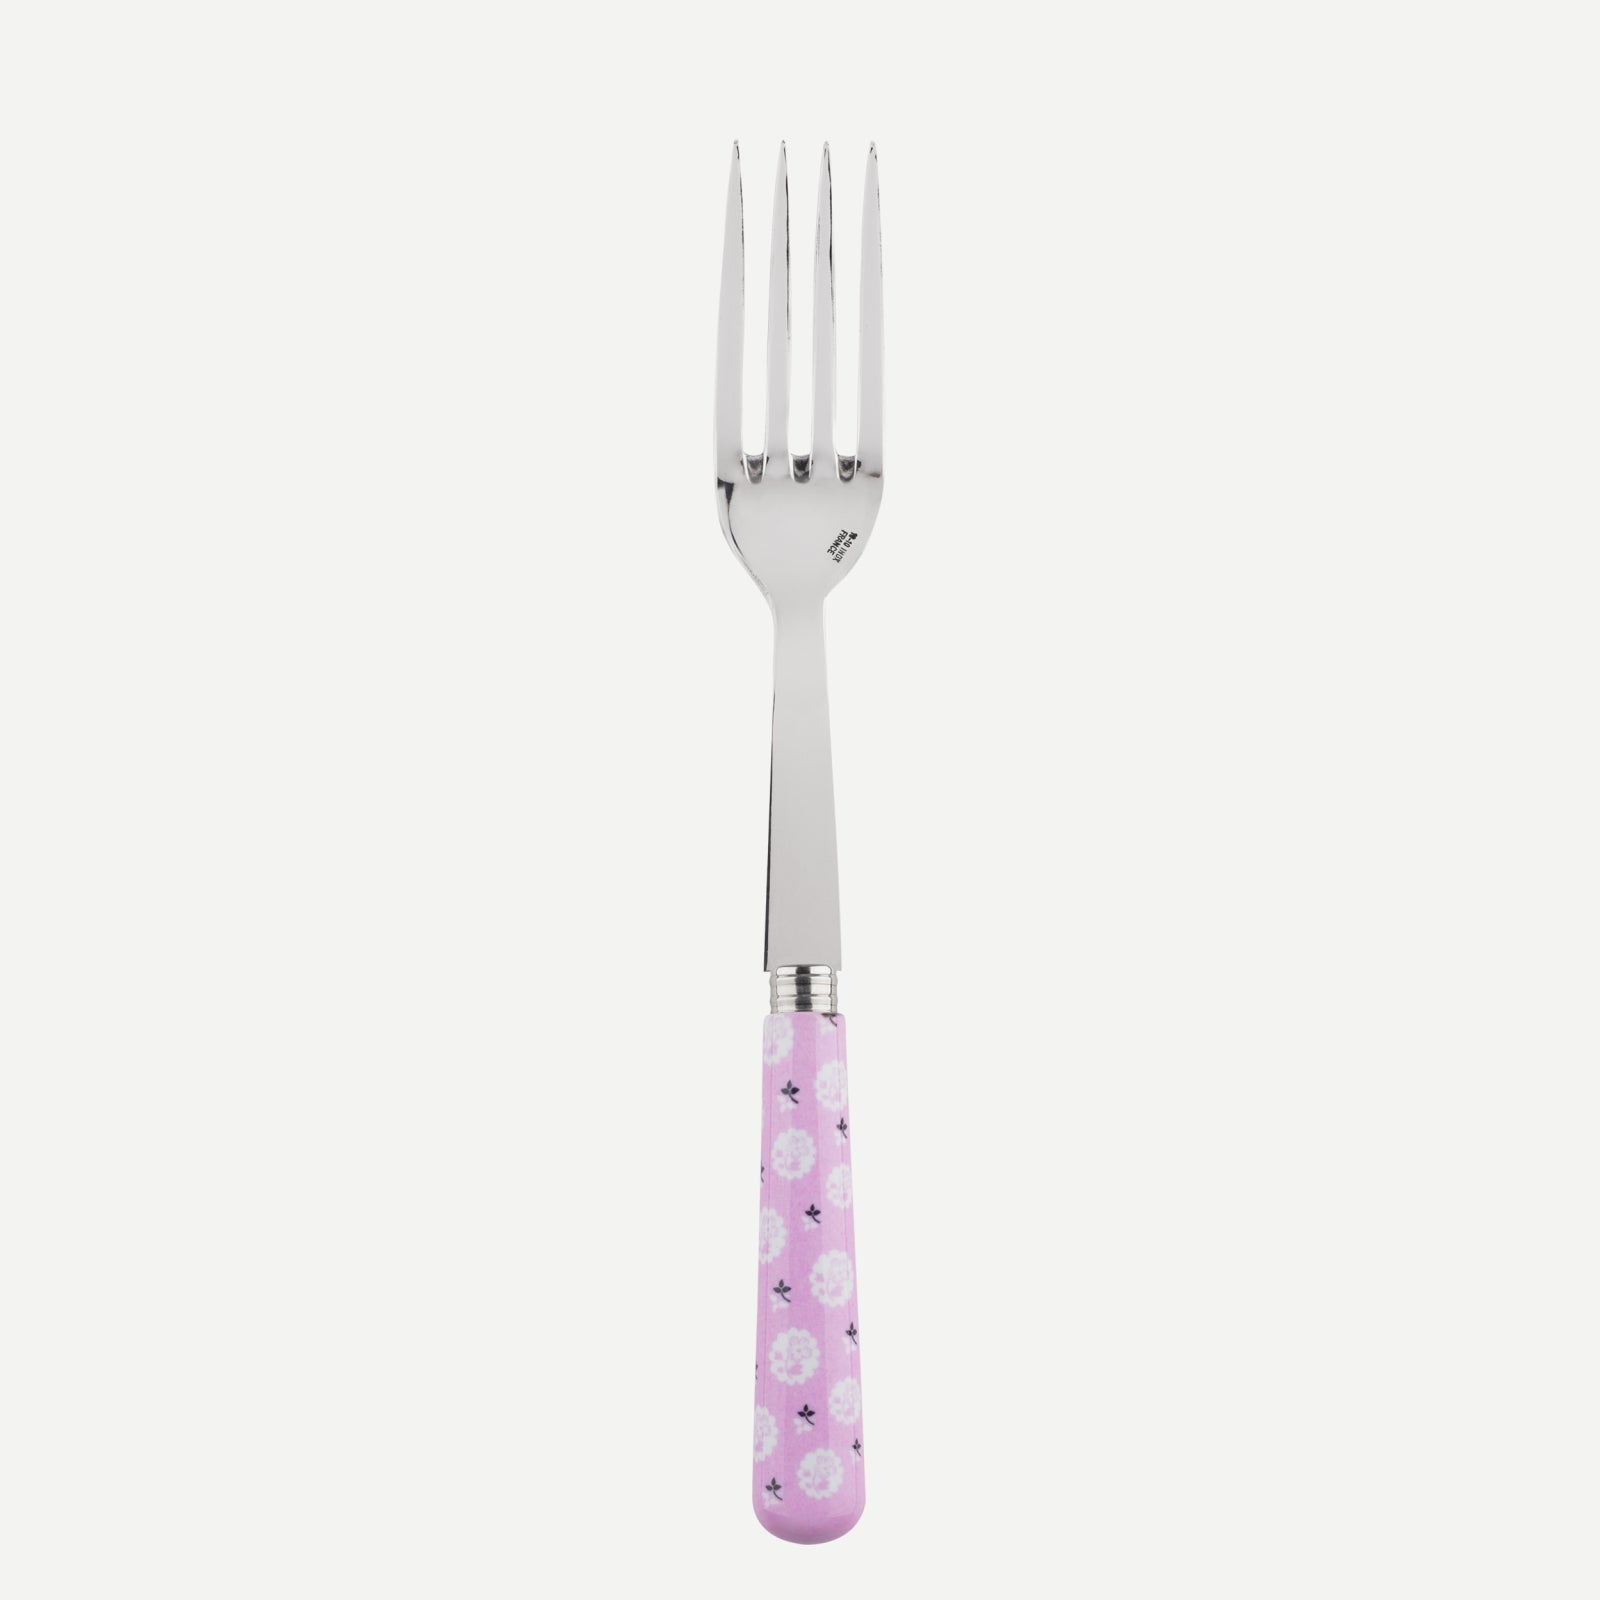 Serving fork - Provencal - Pink